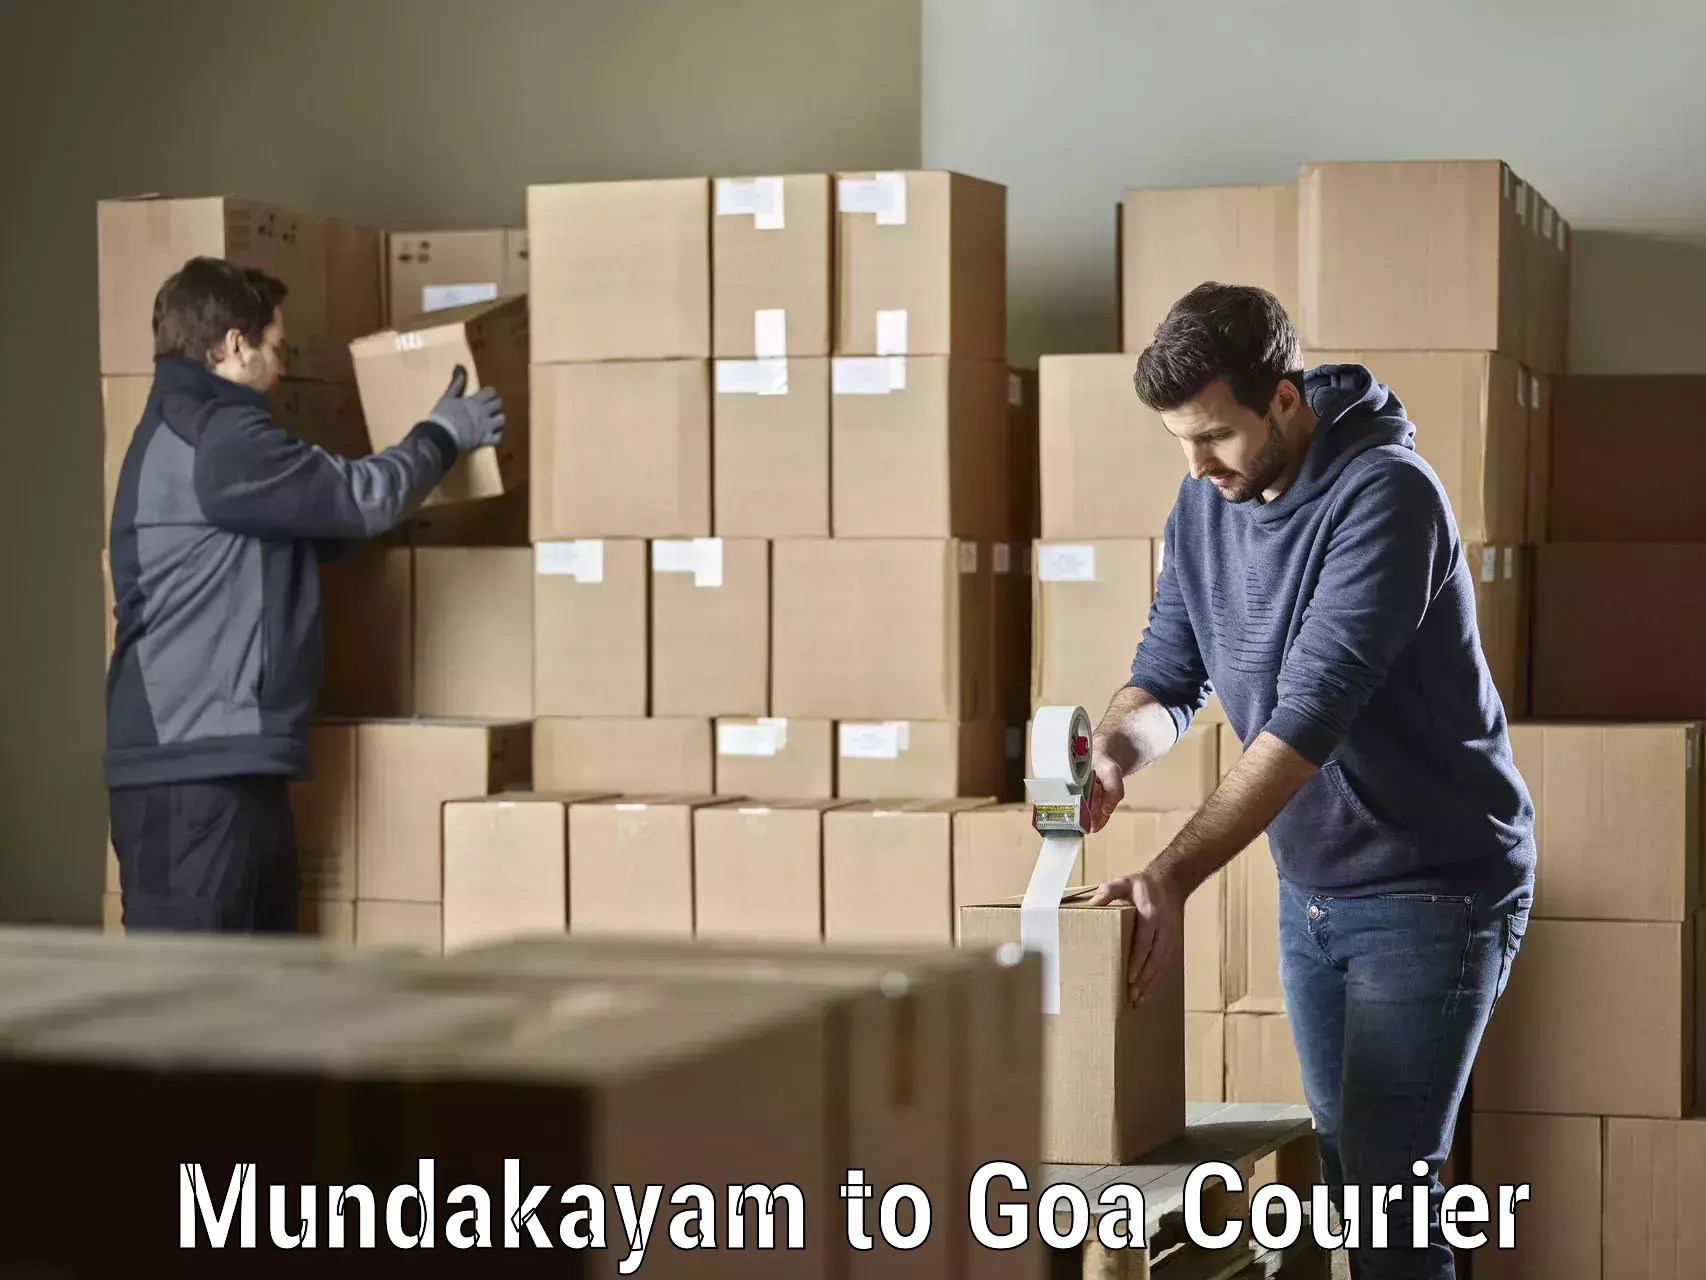 Global courier networks Mundakayam to Panaji